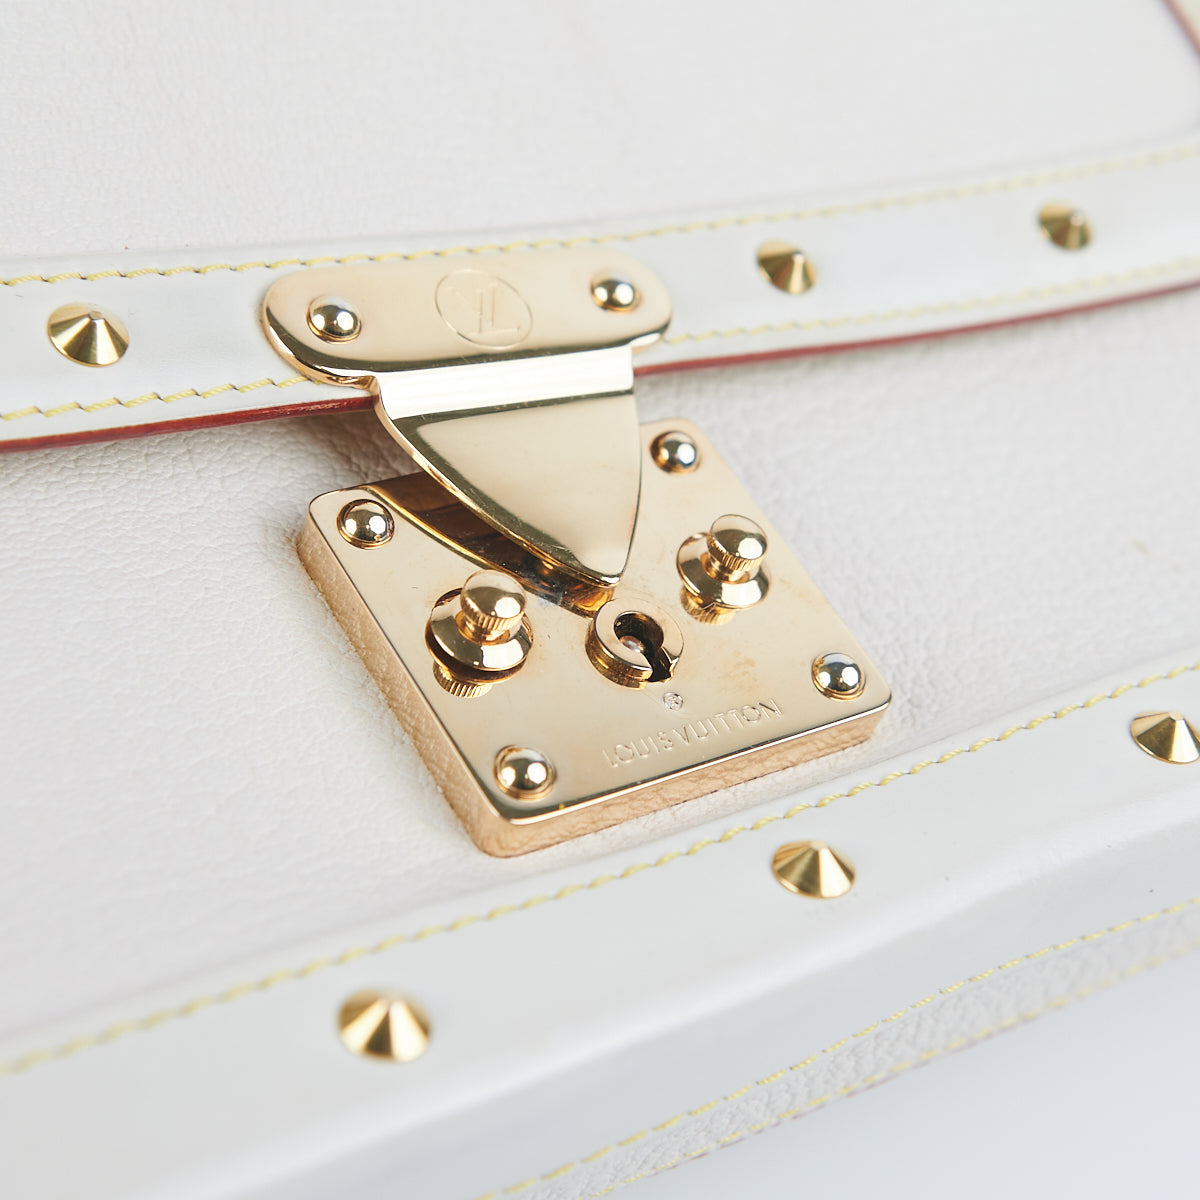 Louis Vuitton Lingenieux Pm M91811 Suhali Leather Handbag White Gold